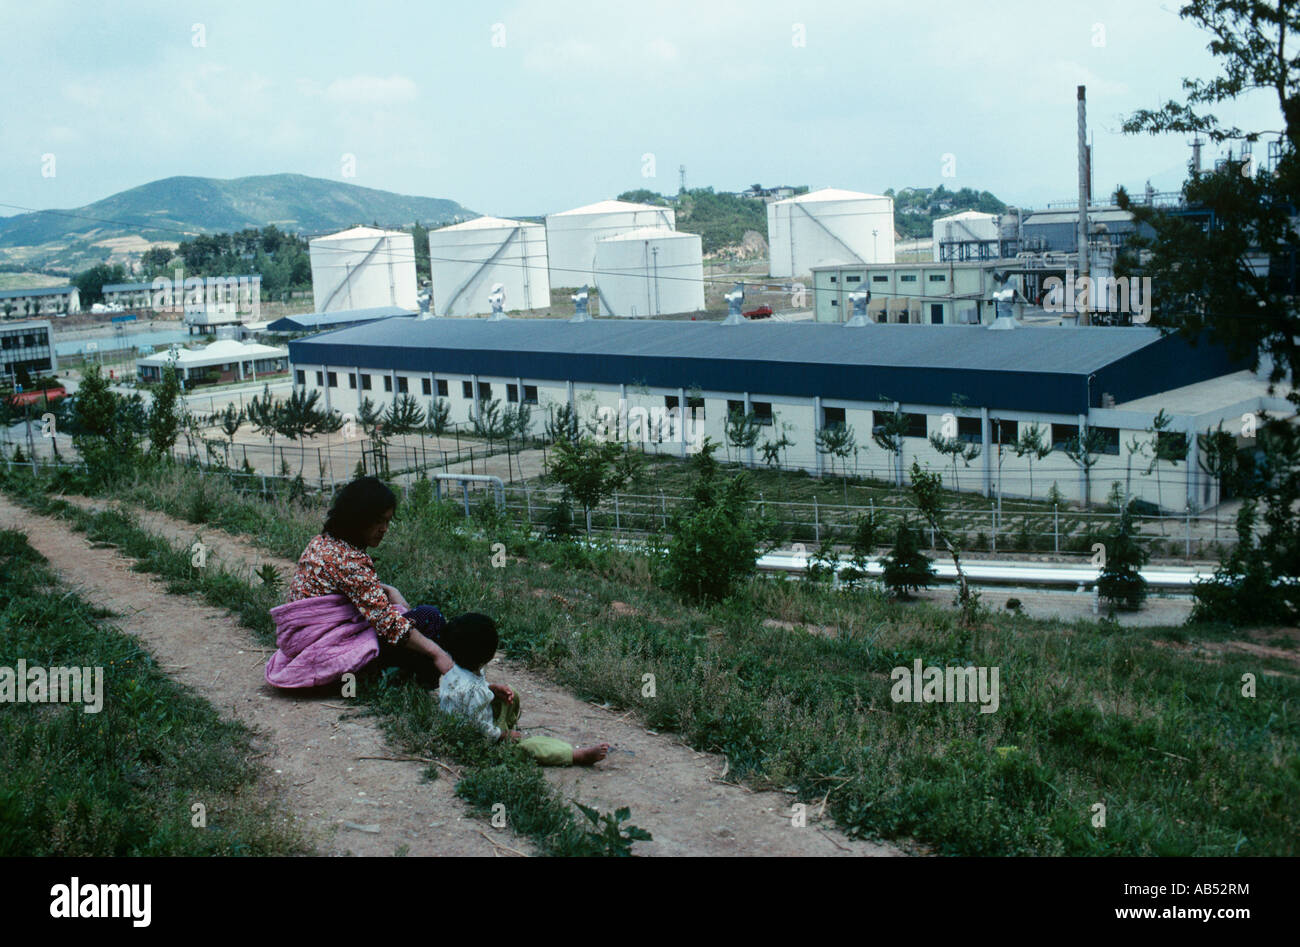 Corée du Sud, le coût industriel près de 1974, l'usine de méthanol Taesung. Ils sont appelés "chaebols" ou groupes d'entreprises. Banque D'Images